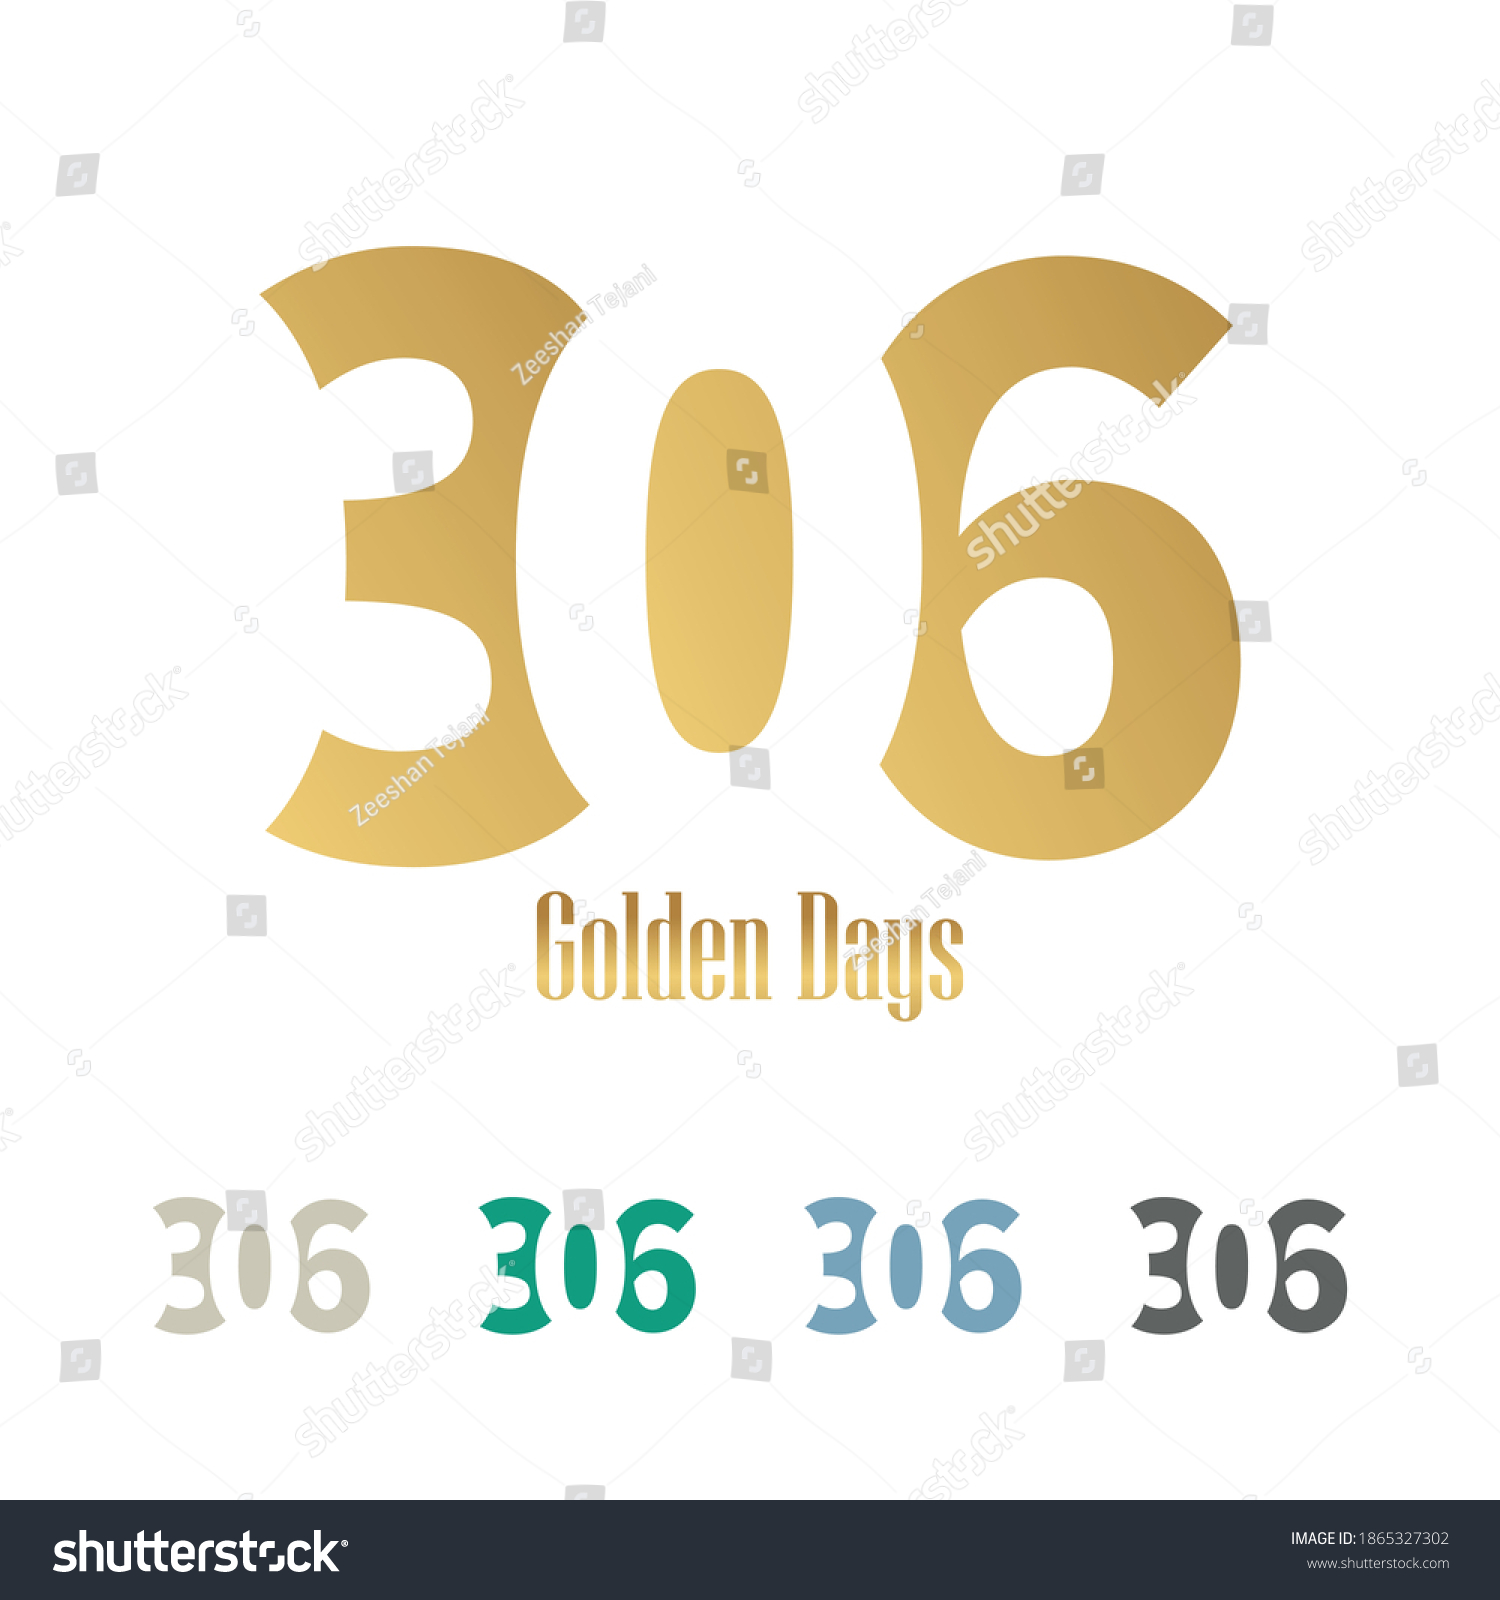 SVG of 306 lettertype vector logo design, 306 golden days svg